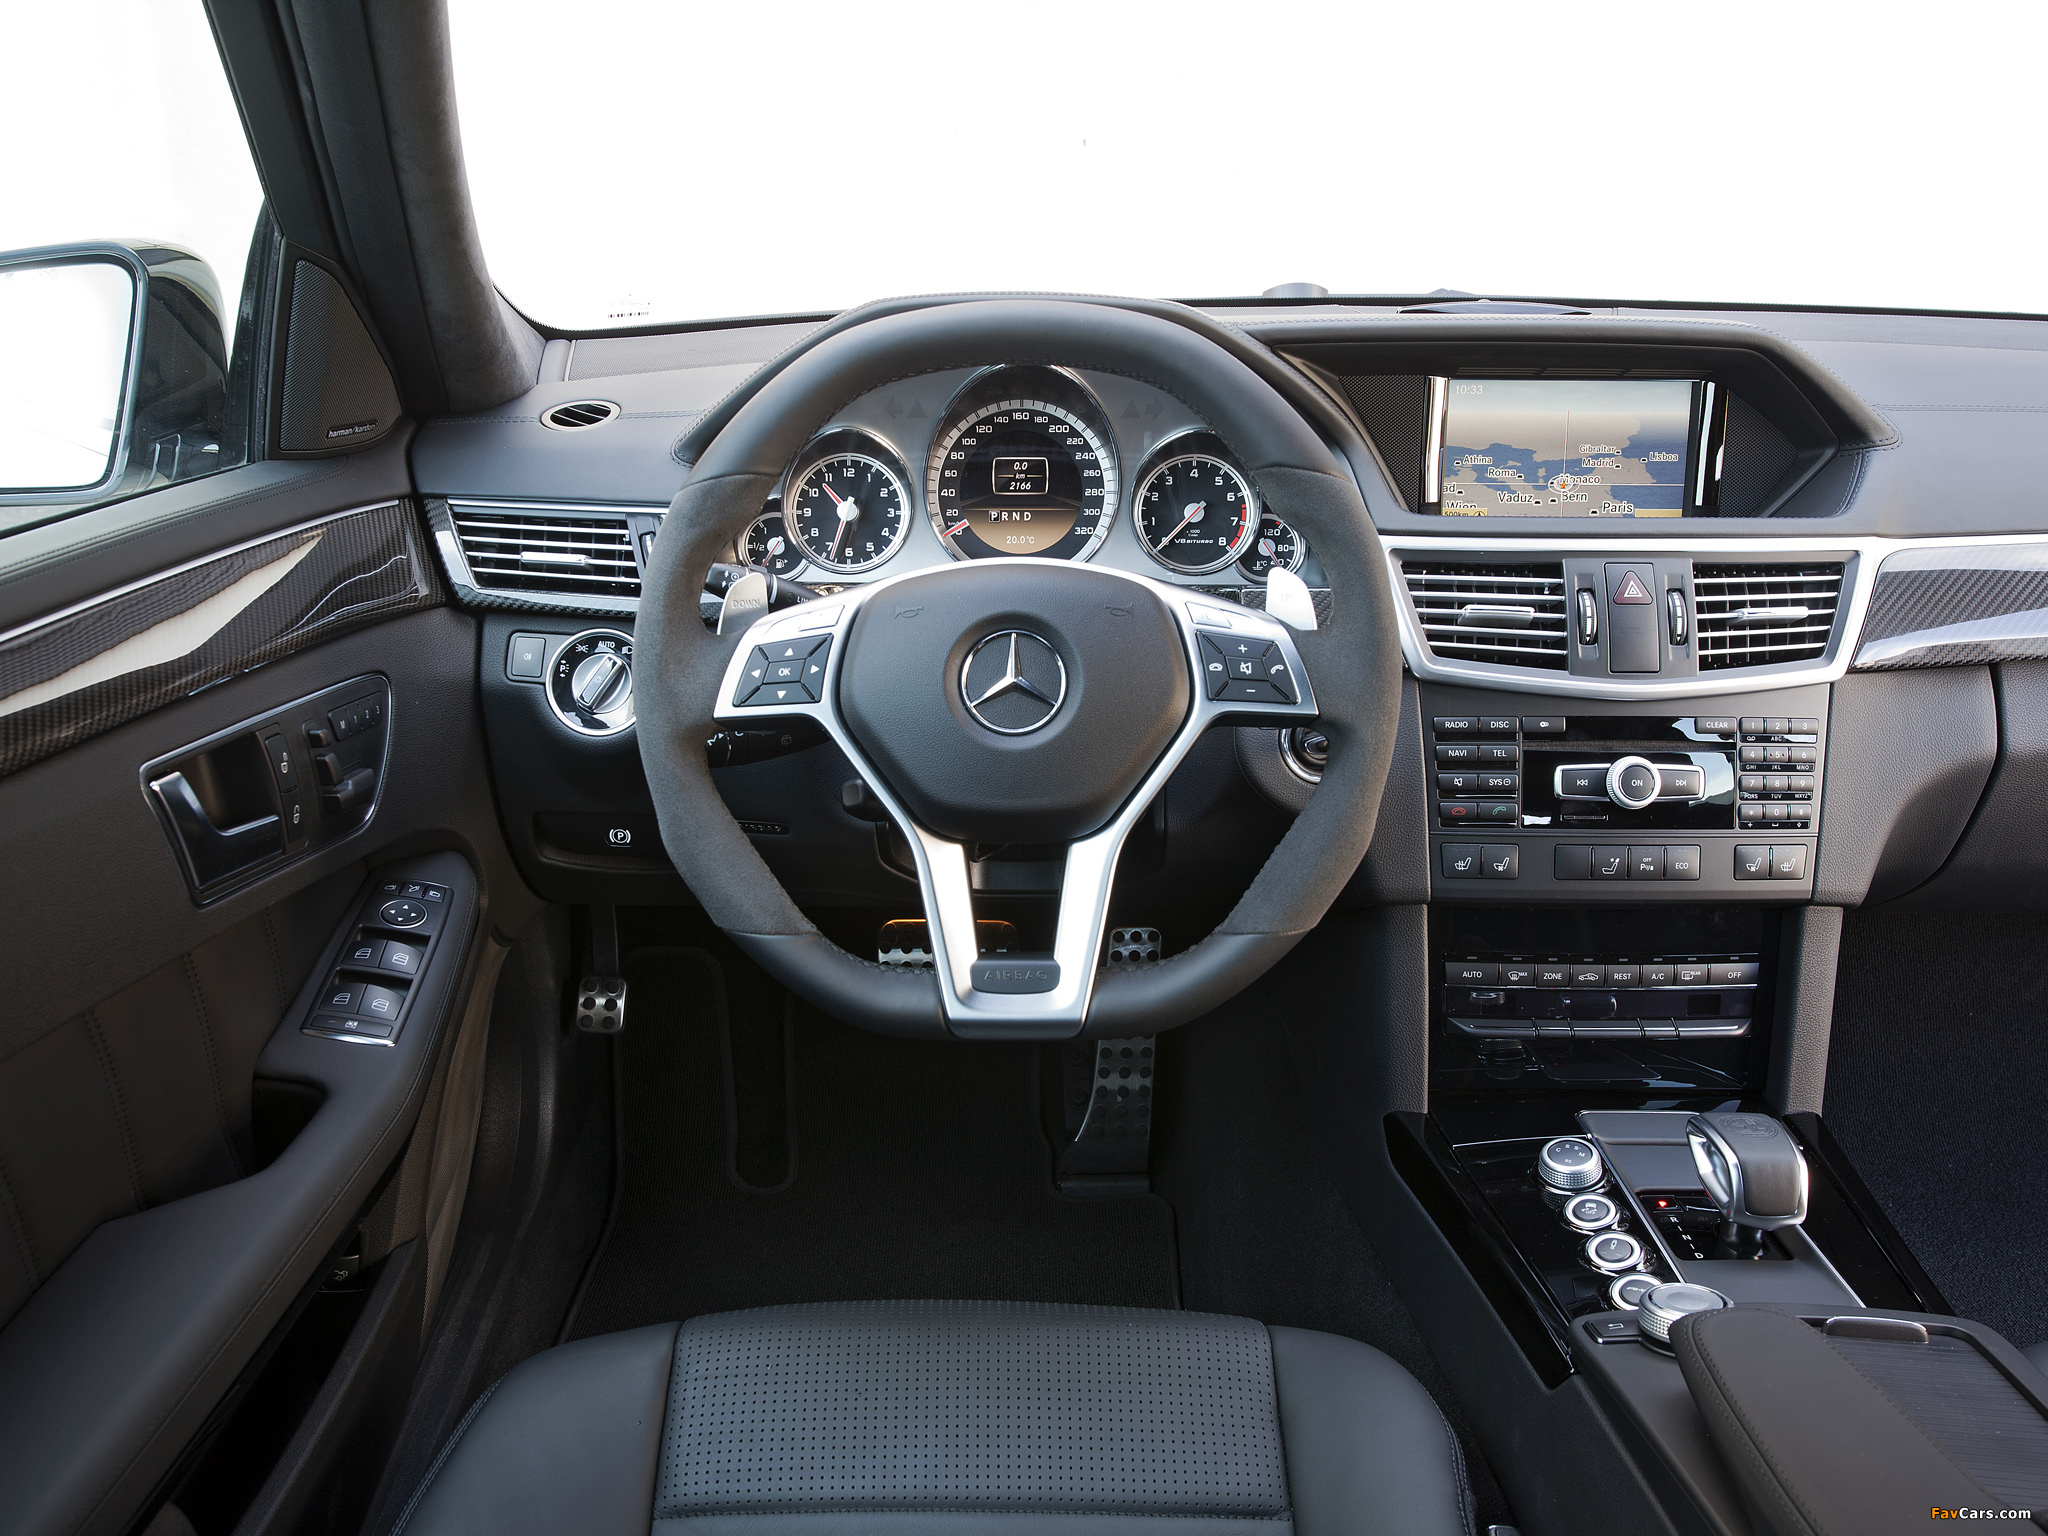 Заправочный объем и код оригинальной жидкости ГУР для Mercedes E-Class (W212) фото